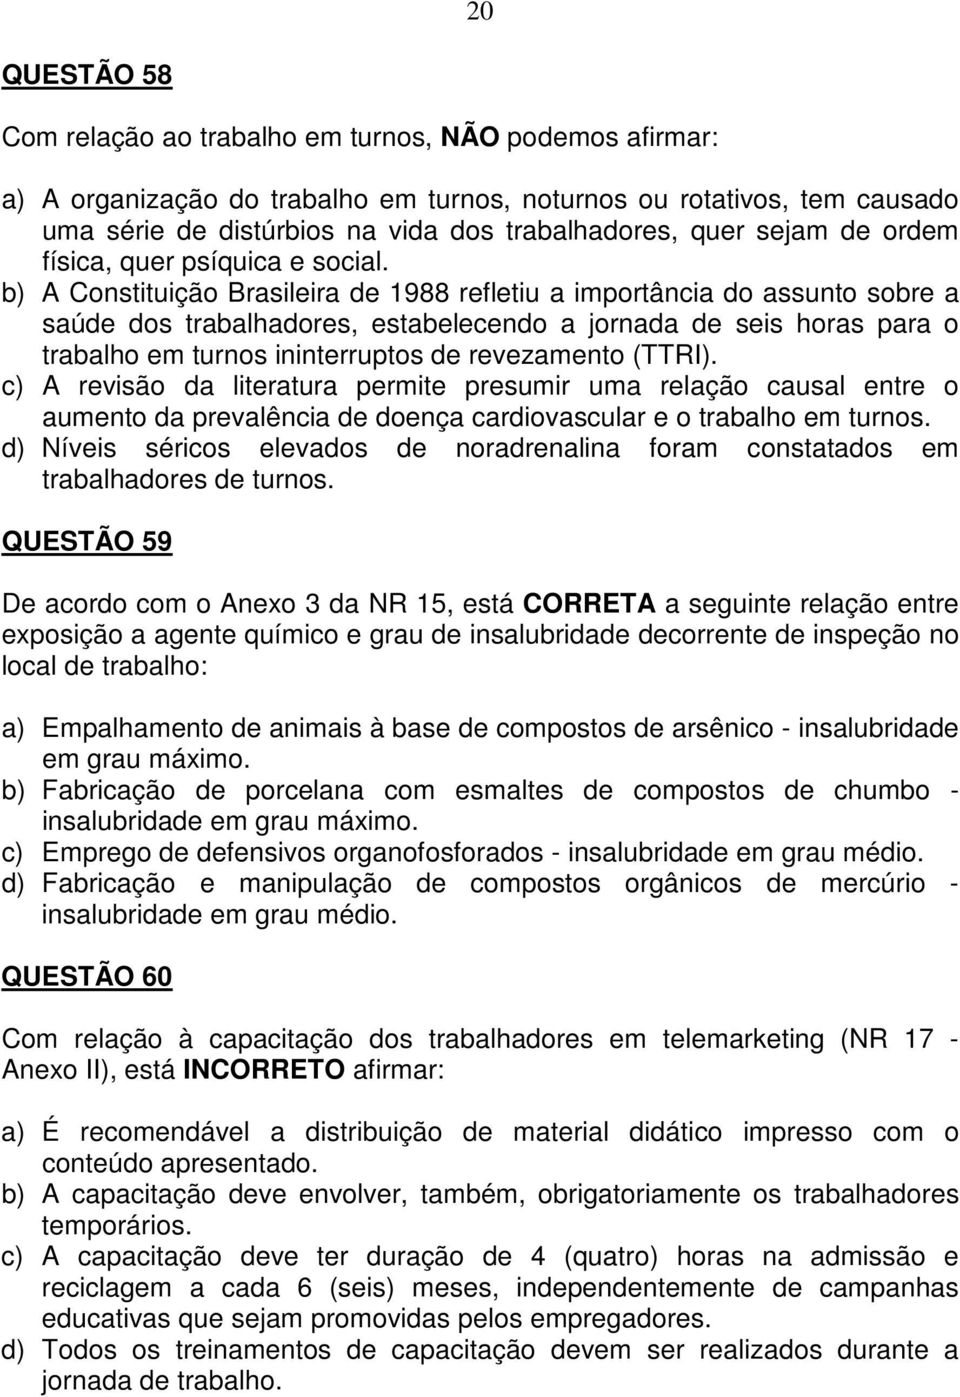 b) A Constituição Brasileira de 1988 refletiu a importância do assunto sobre a saúde dos trabalhadores, estabelecendo a jornada de seis horas para o trabalho em turnos ininterruptos de revezamento